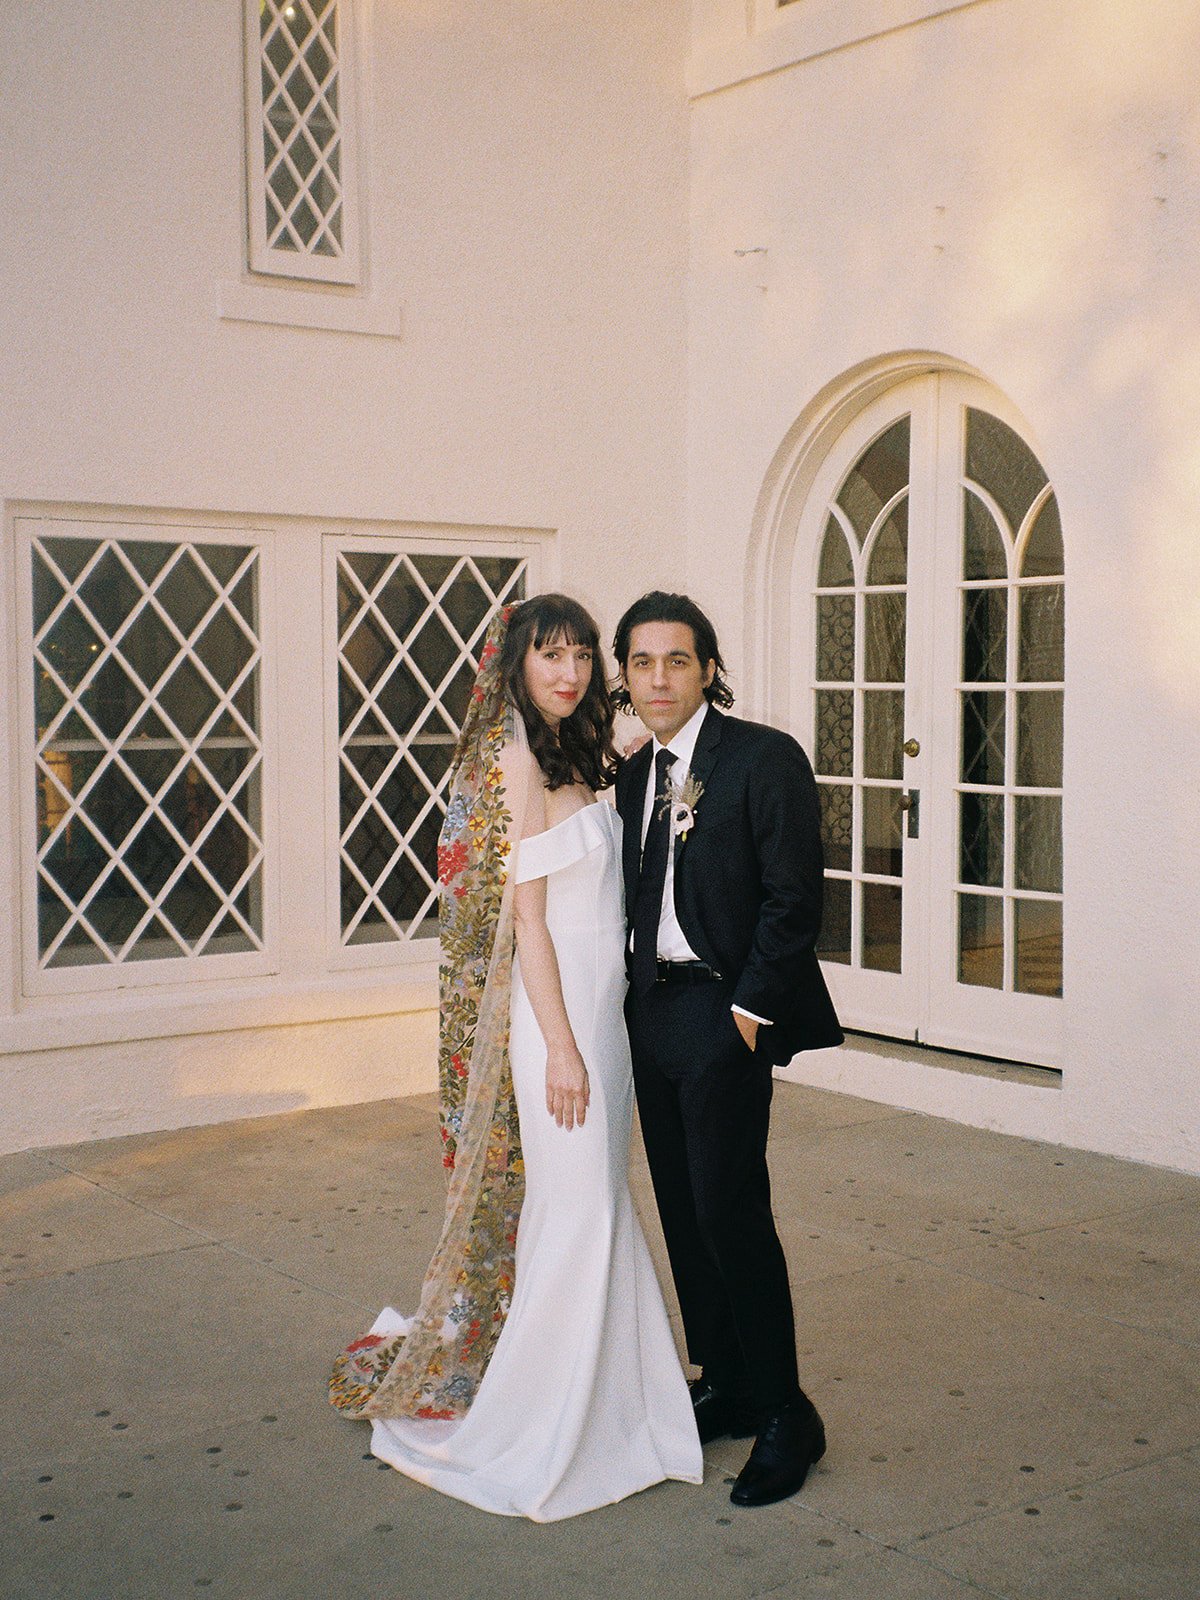 Best-Austin-Wedding-Photographers-Elopement-Film-35mm-Asheville-Santa-Barbara-Laguna-Gloria-62.jpg